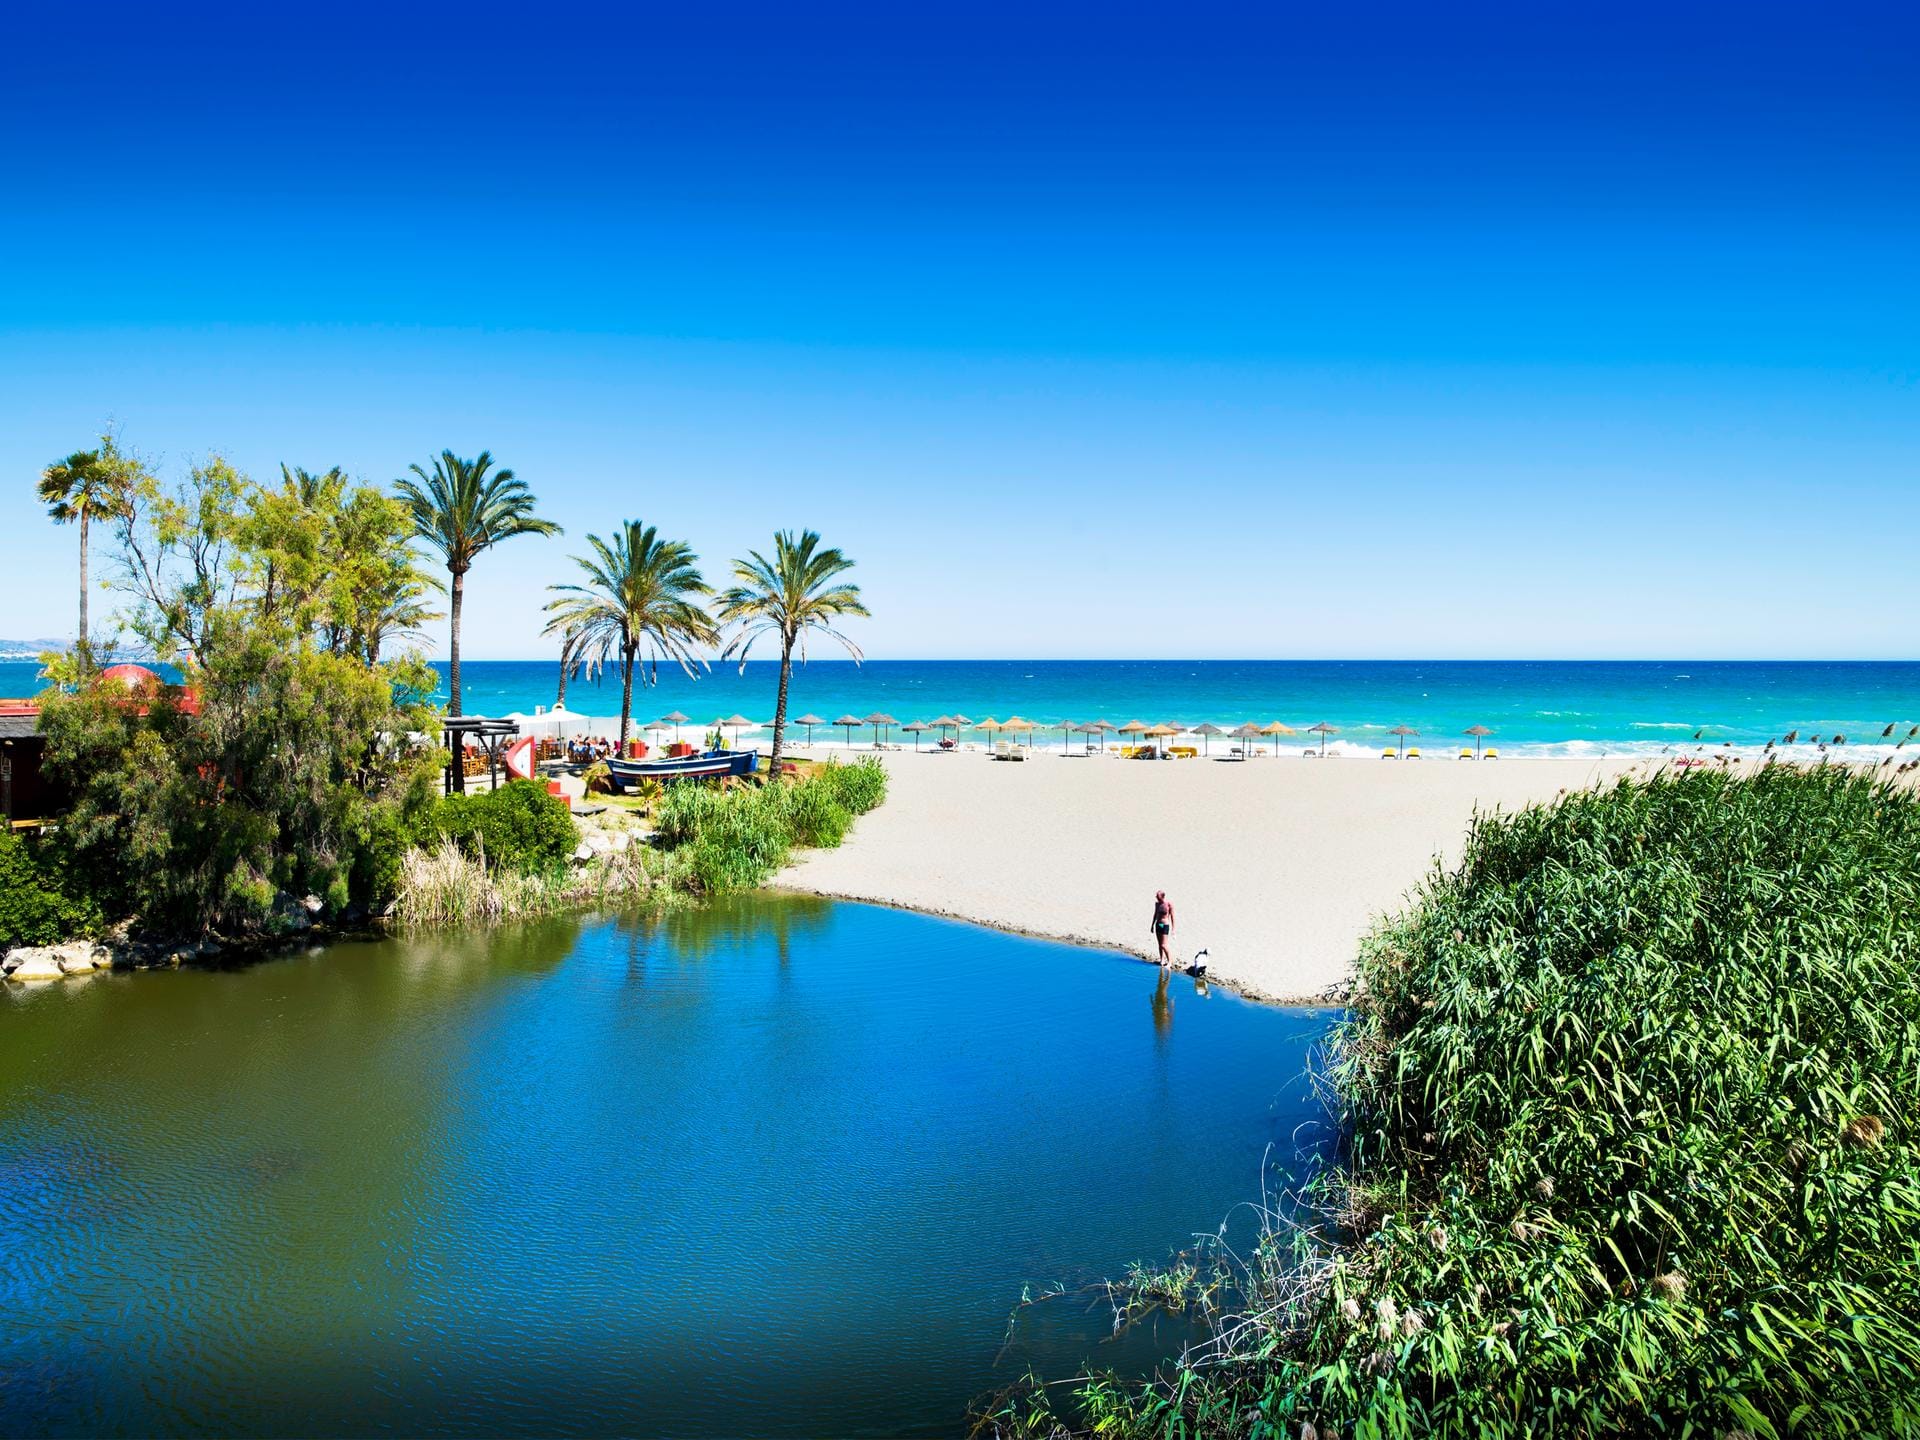 Strände wie Nikki Beach oder Bounty Beach sind legendär. Marbella bietet aber auch verstecktere Buchten.